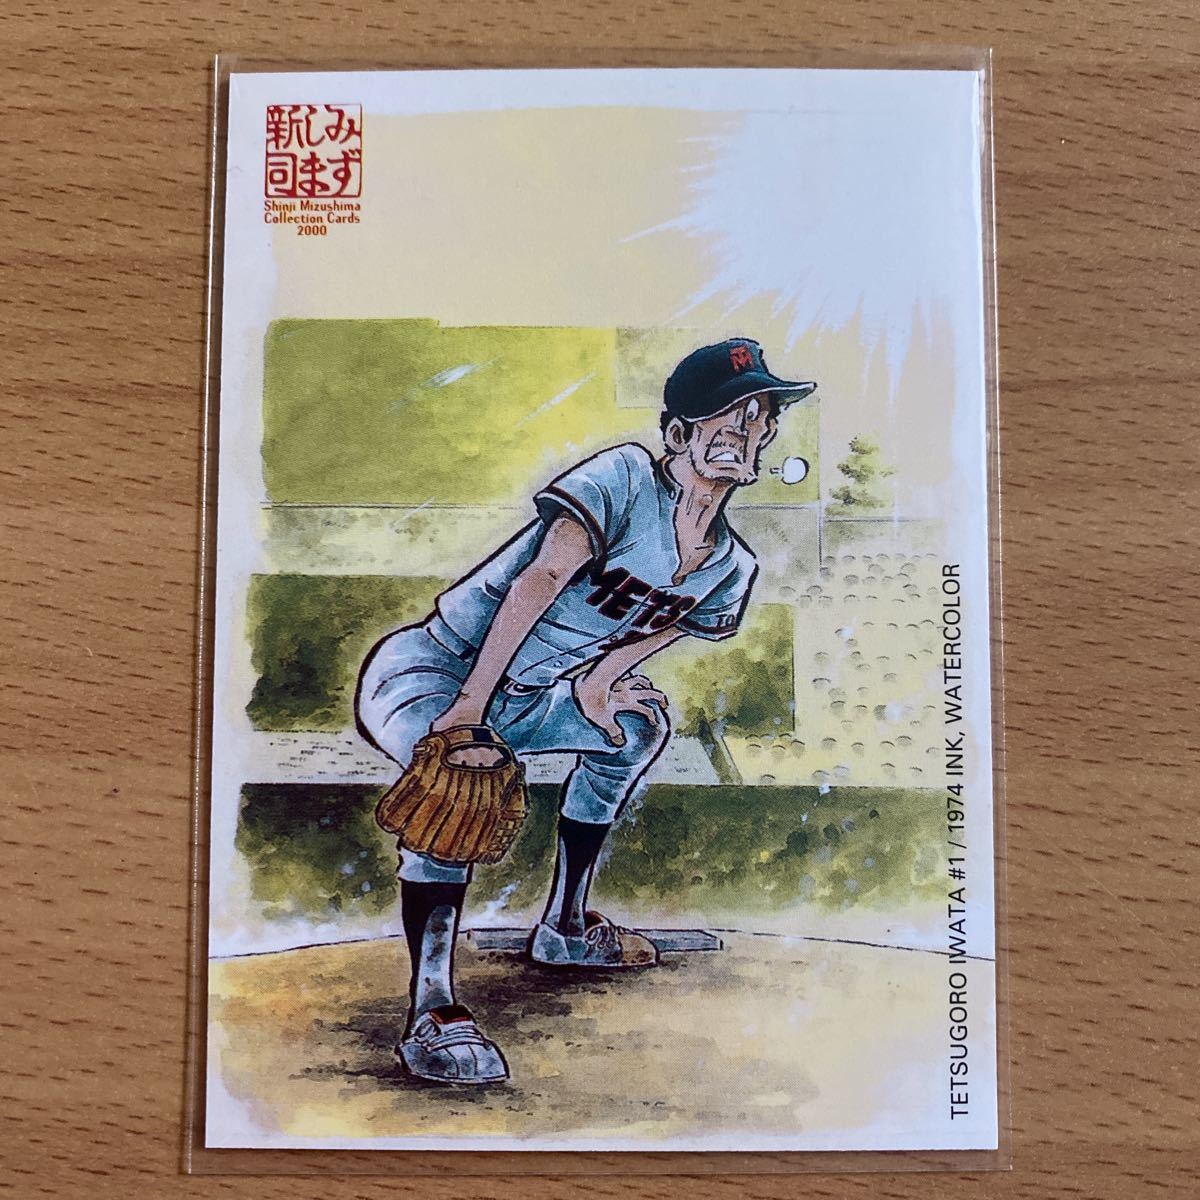 エポック社 水島新司コレクションカード2000 #047 #1 岩田鉄五郎 野球 